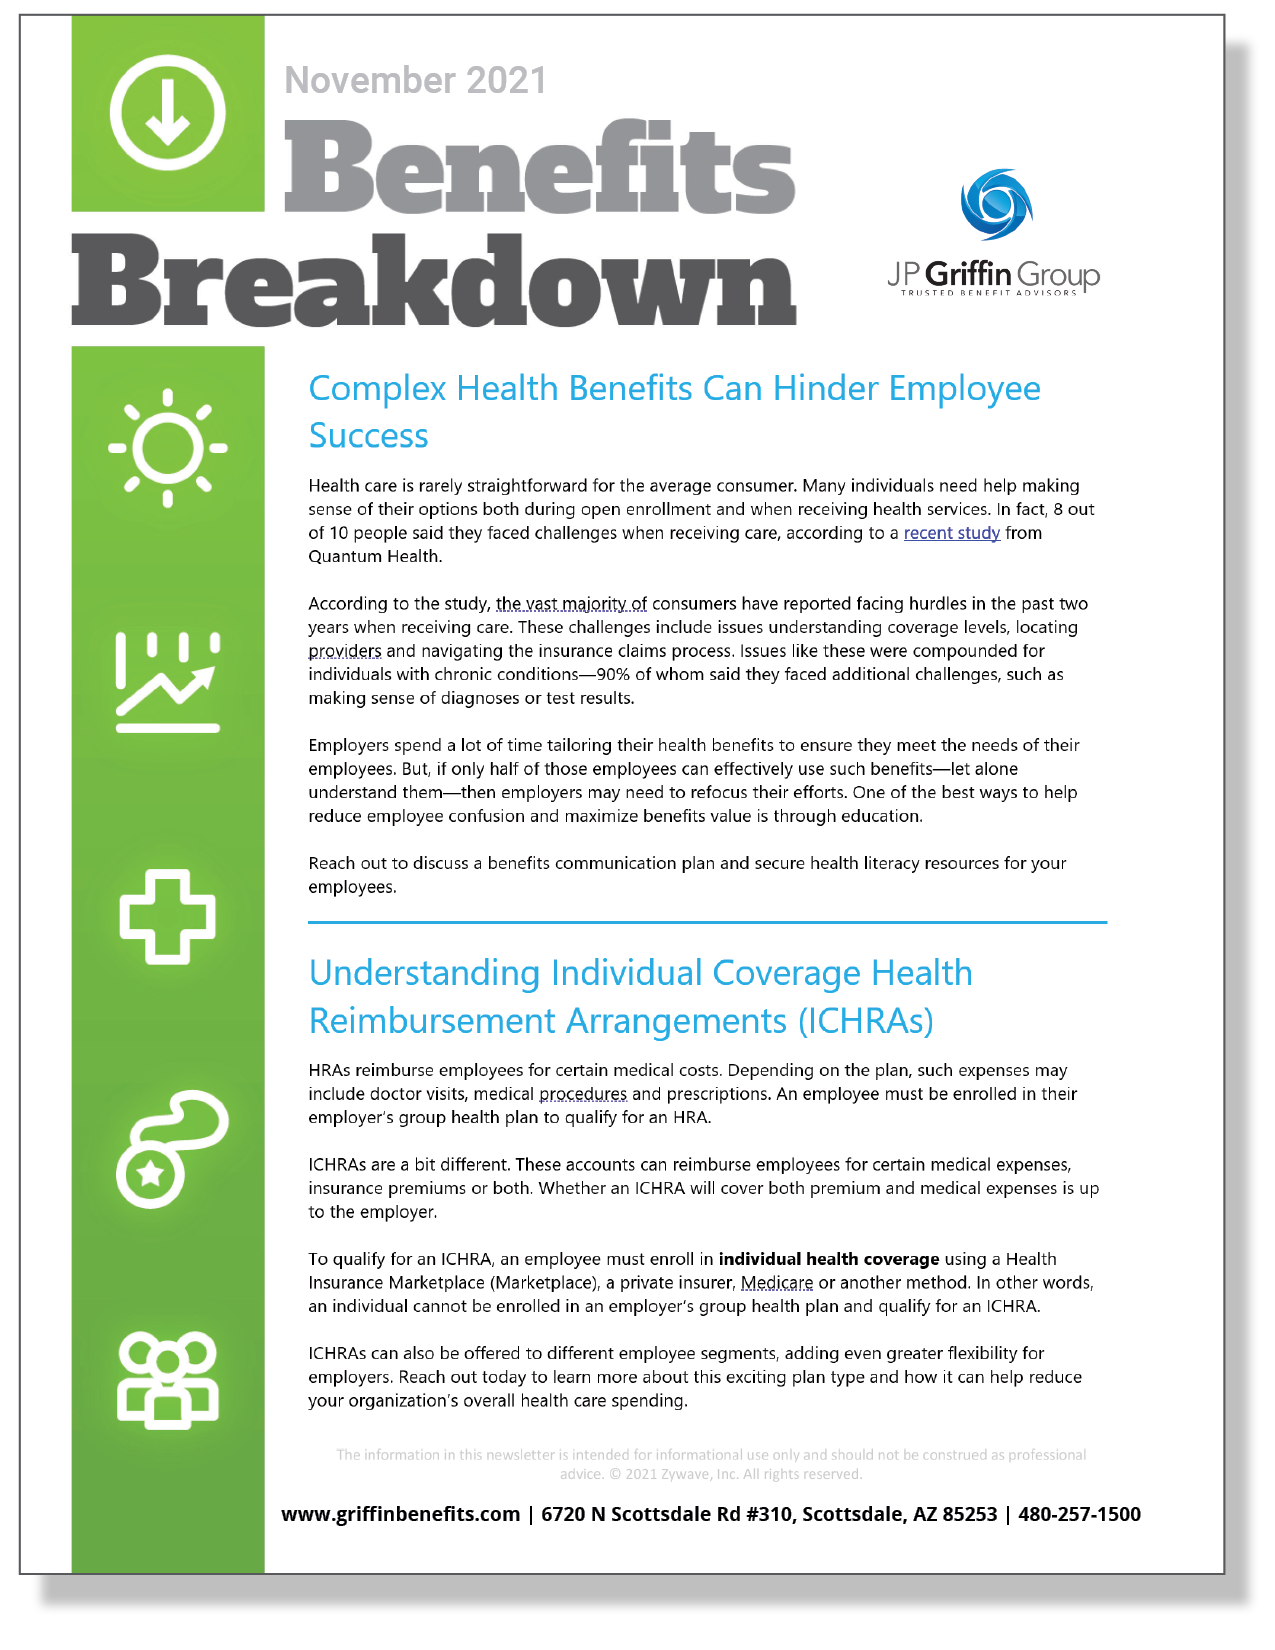 Benefits Breakdown Newsletter - November 2021 10.15